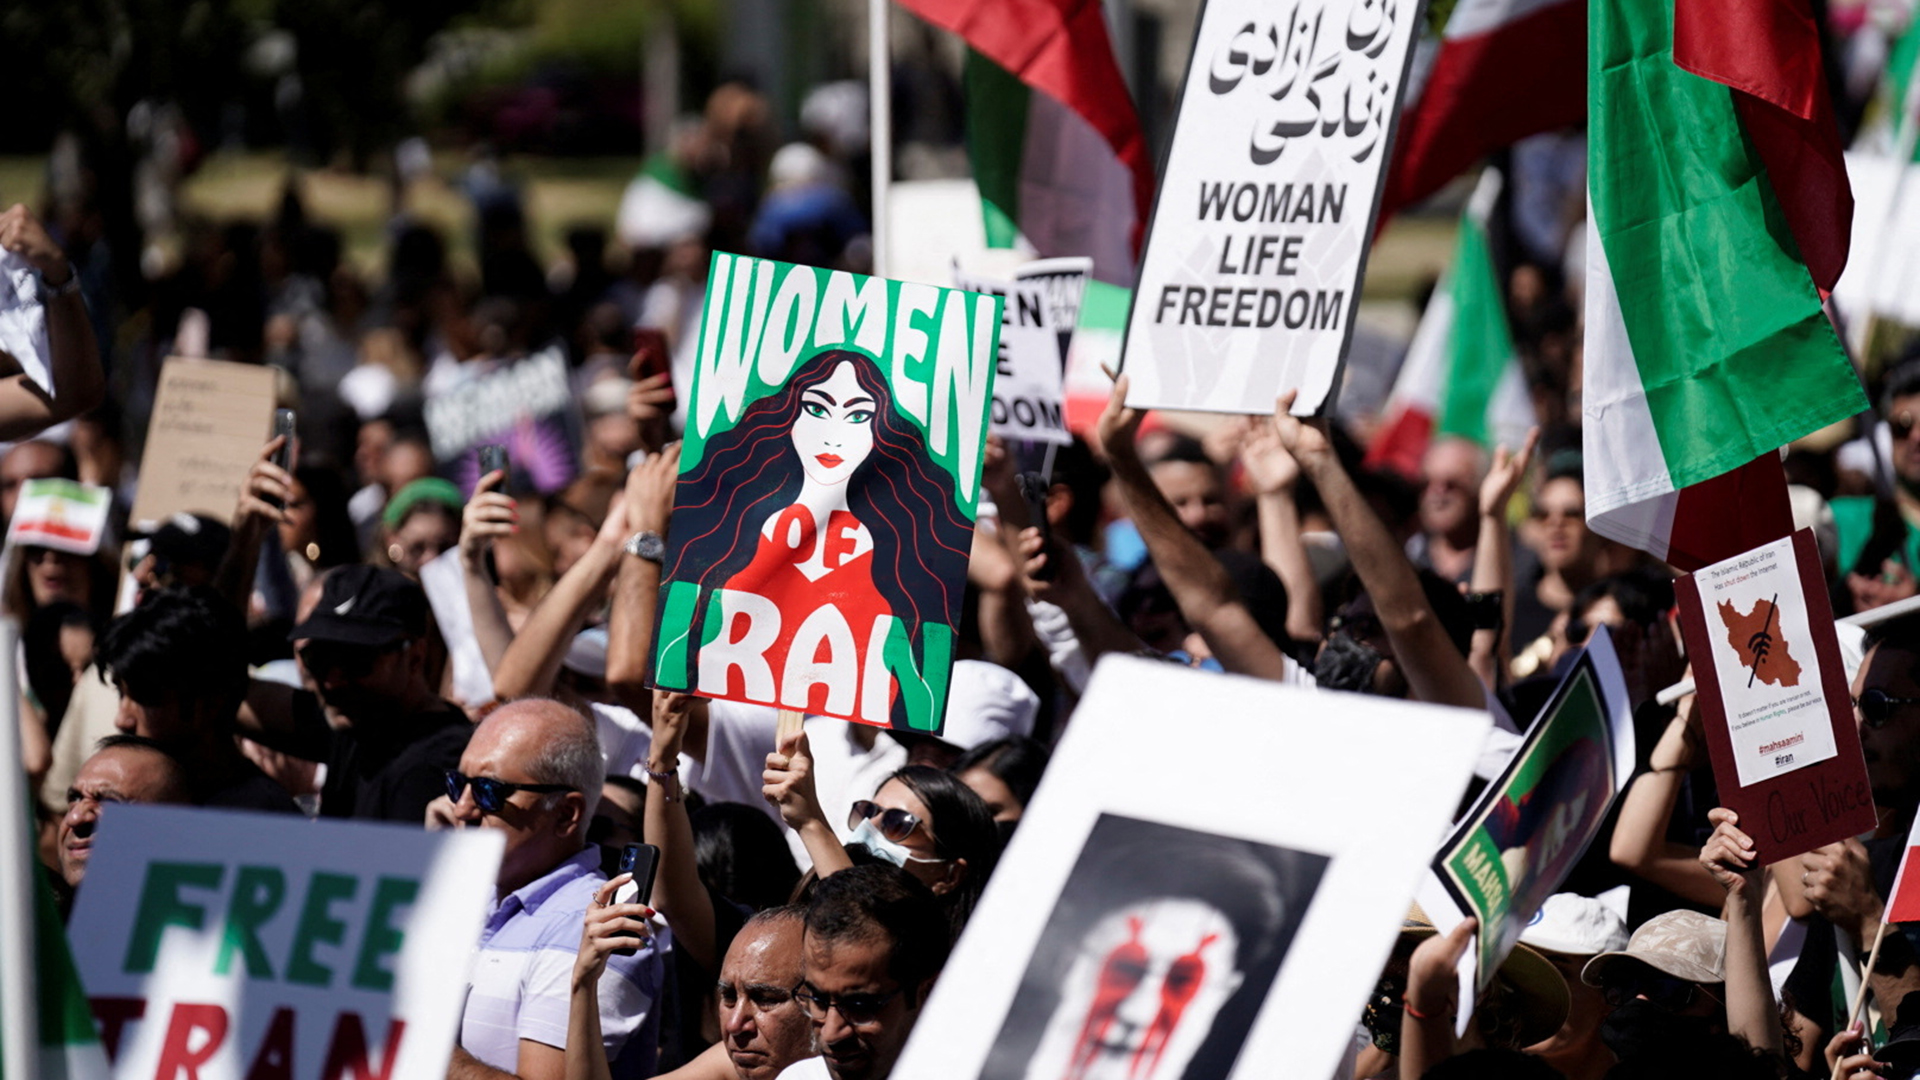 Proteste im Iran: Wo sind die feministischen Stimmen?